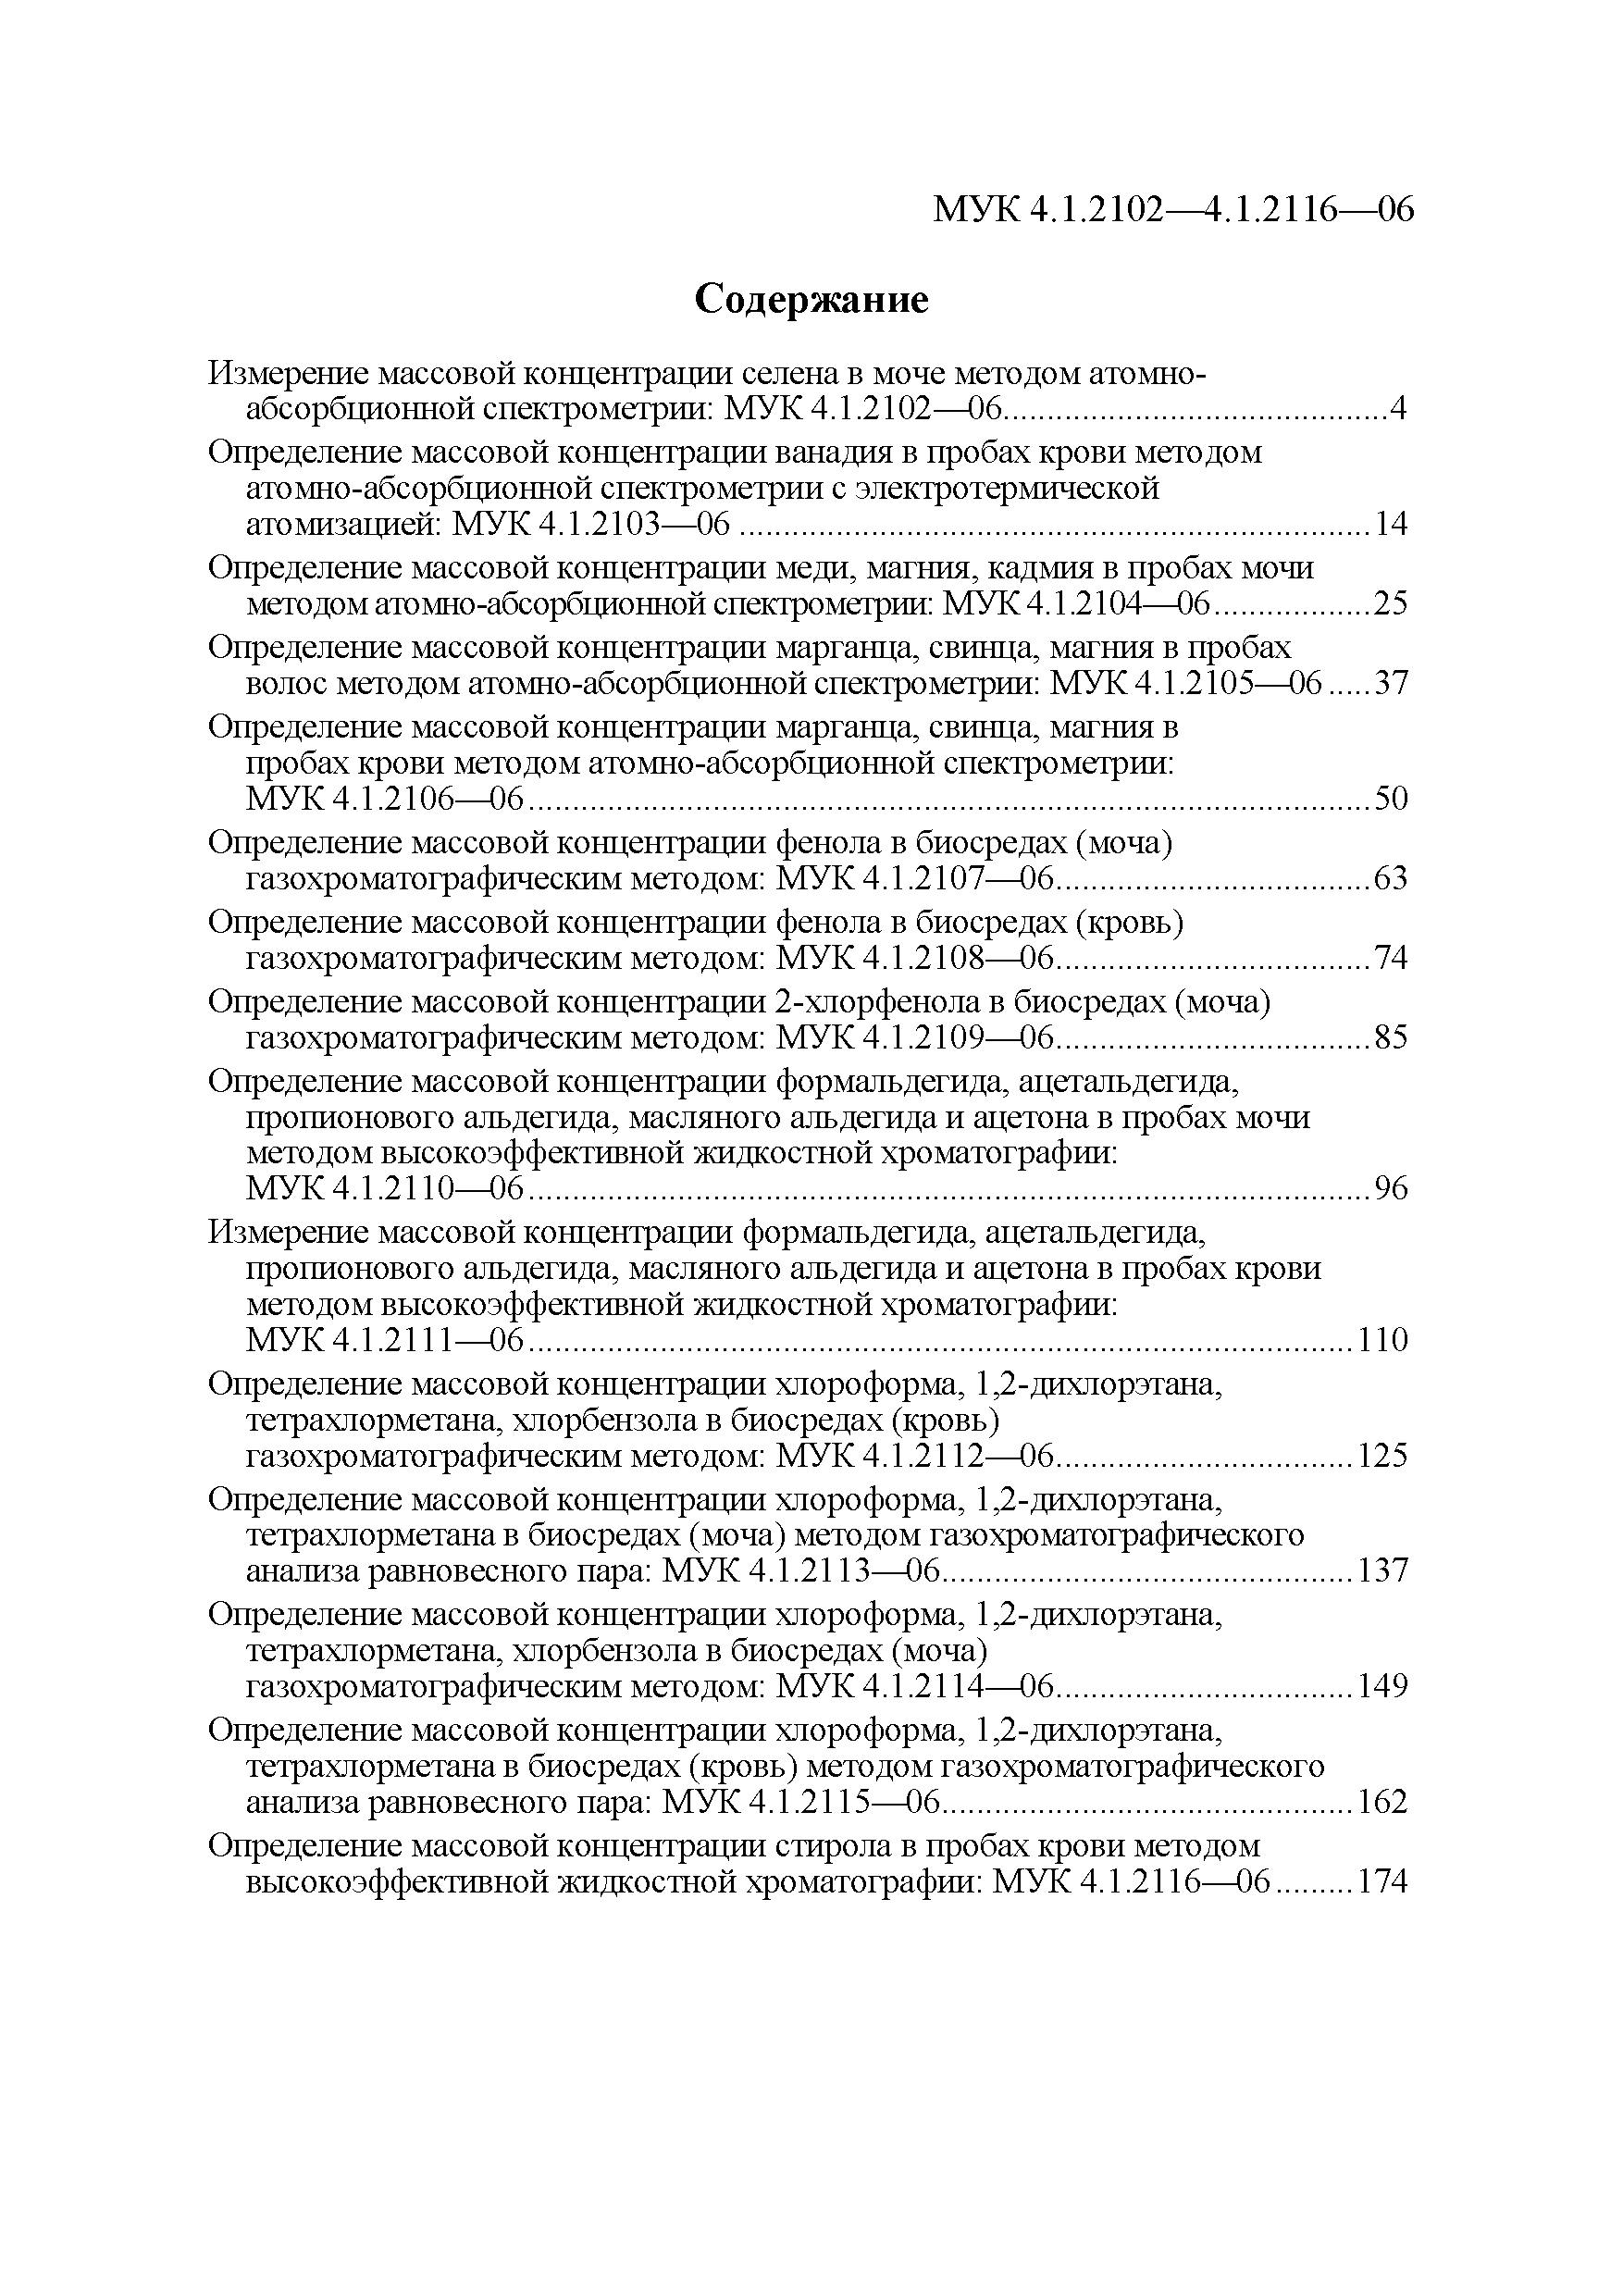 МУК 4.1.2114-06